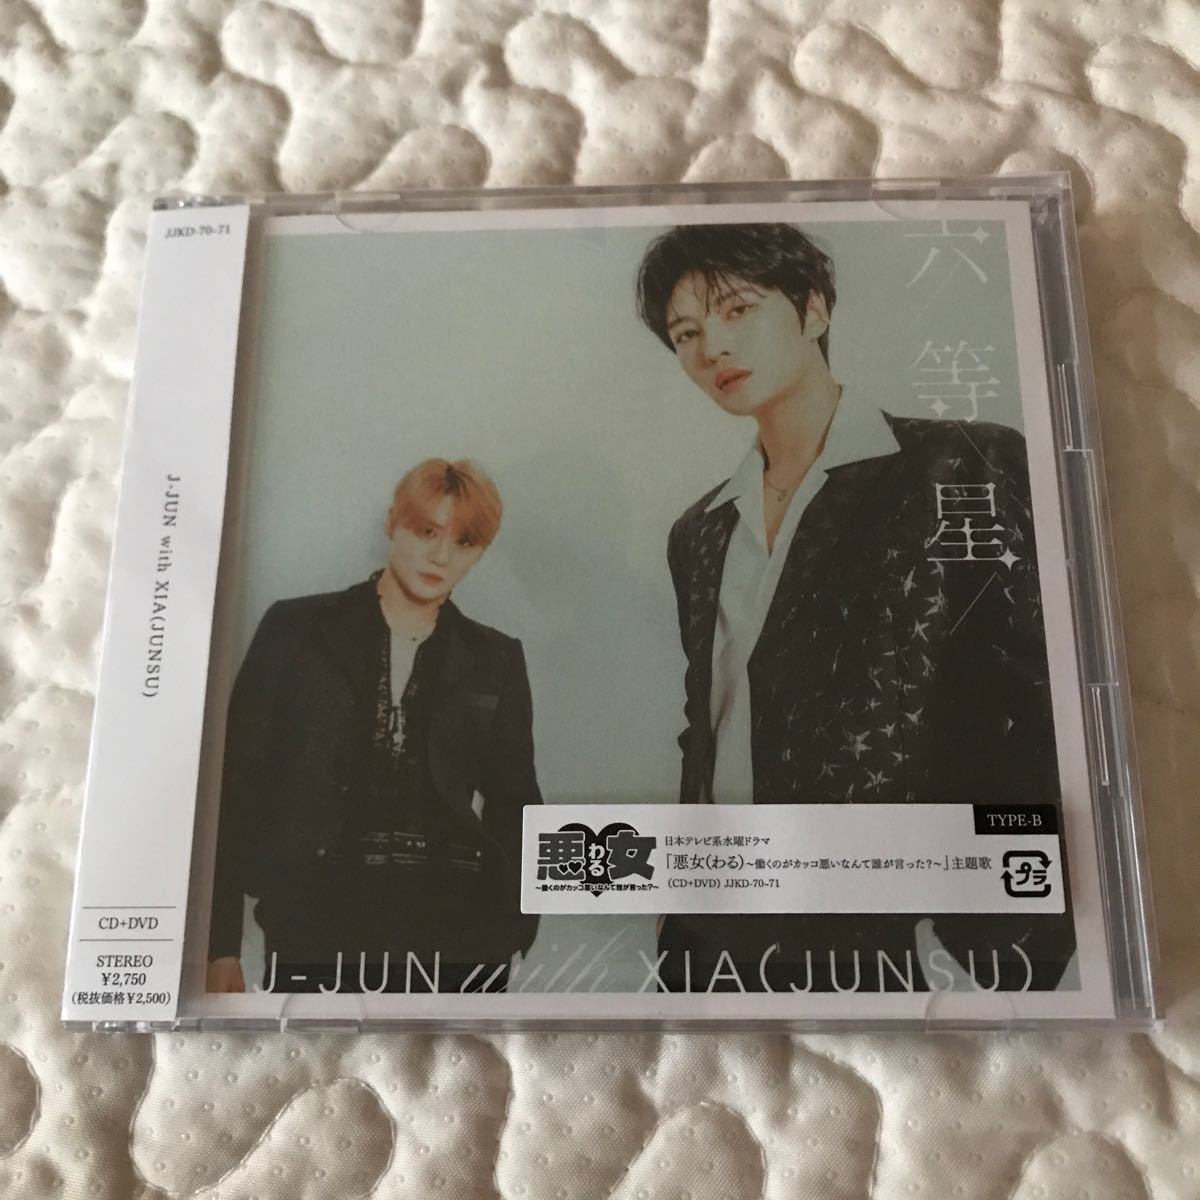 初回盤TYPE-B (取) DVD付 J-JUN with XIA (JUNSU) CD+DVD/六等星 未再生シリアルコード無し